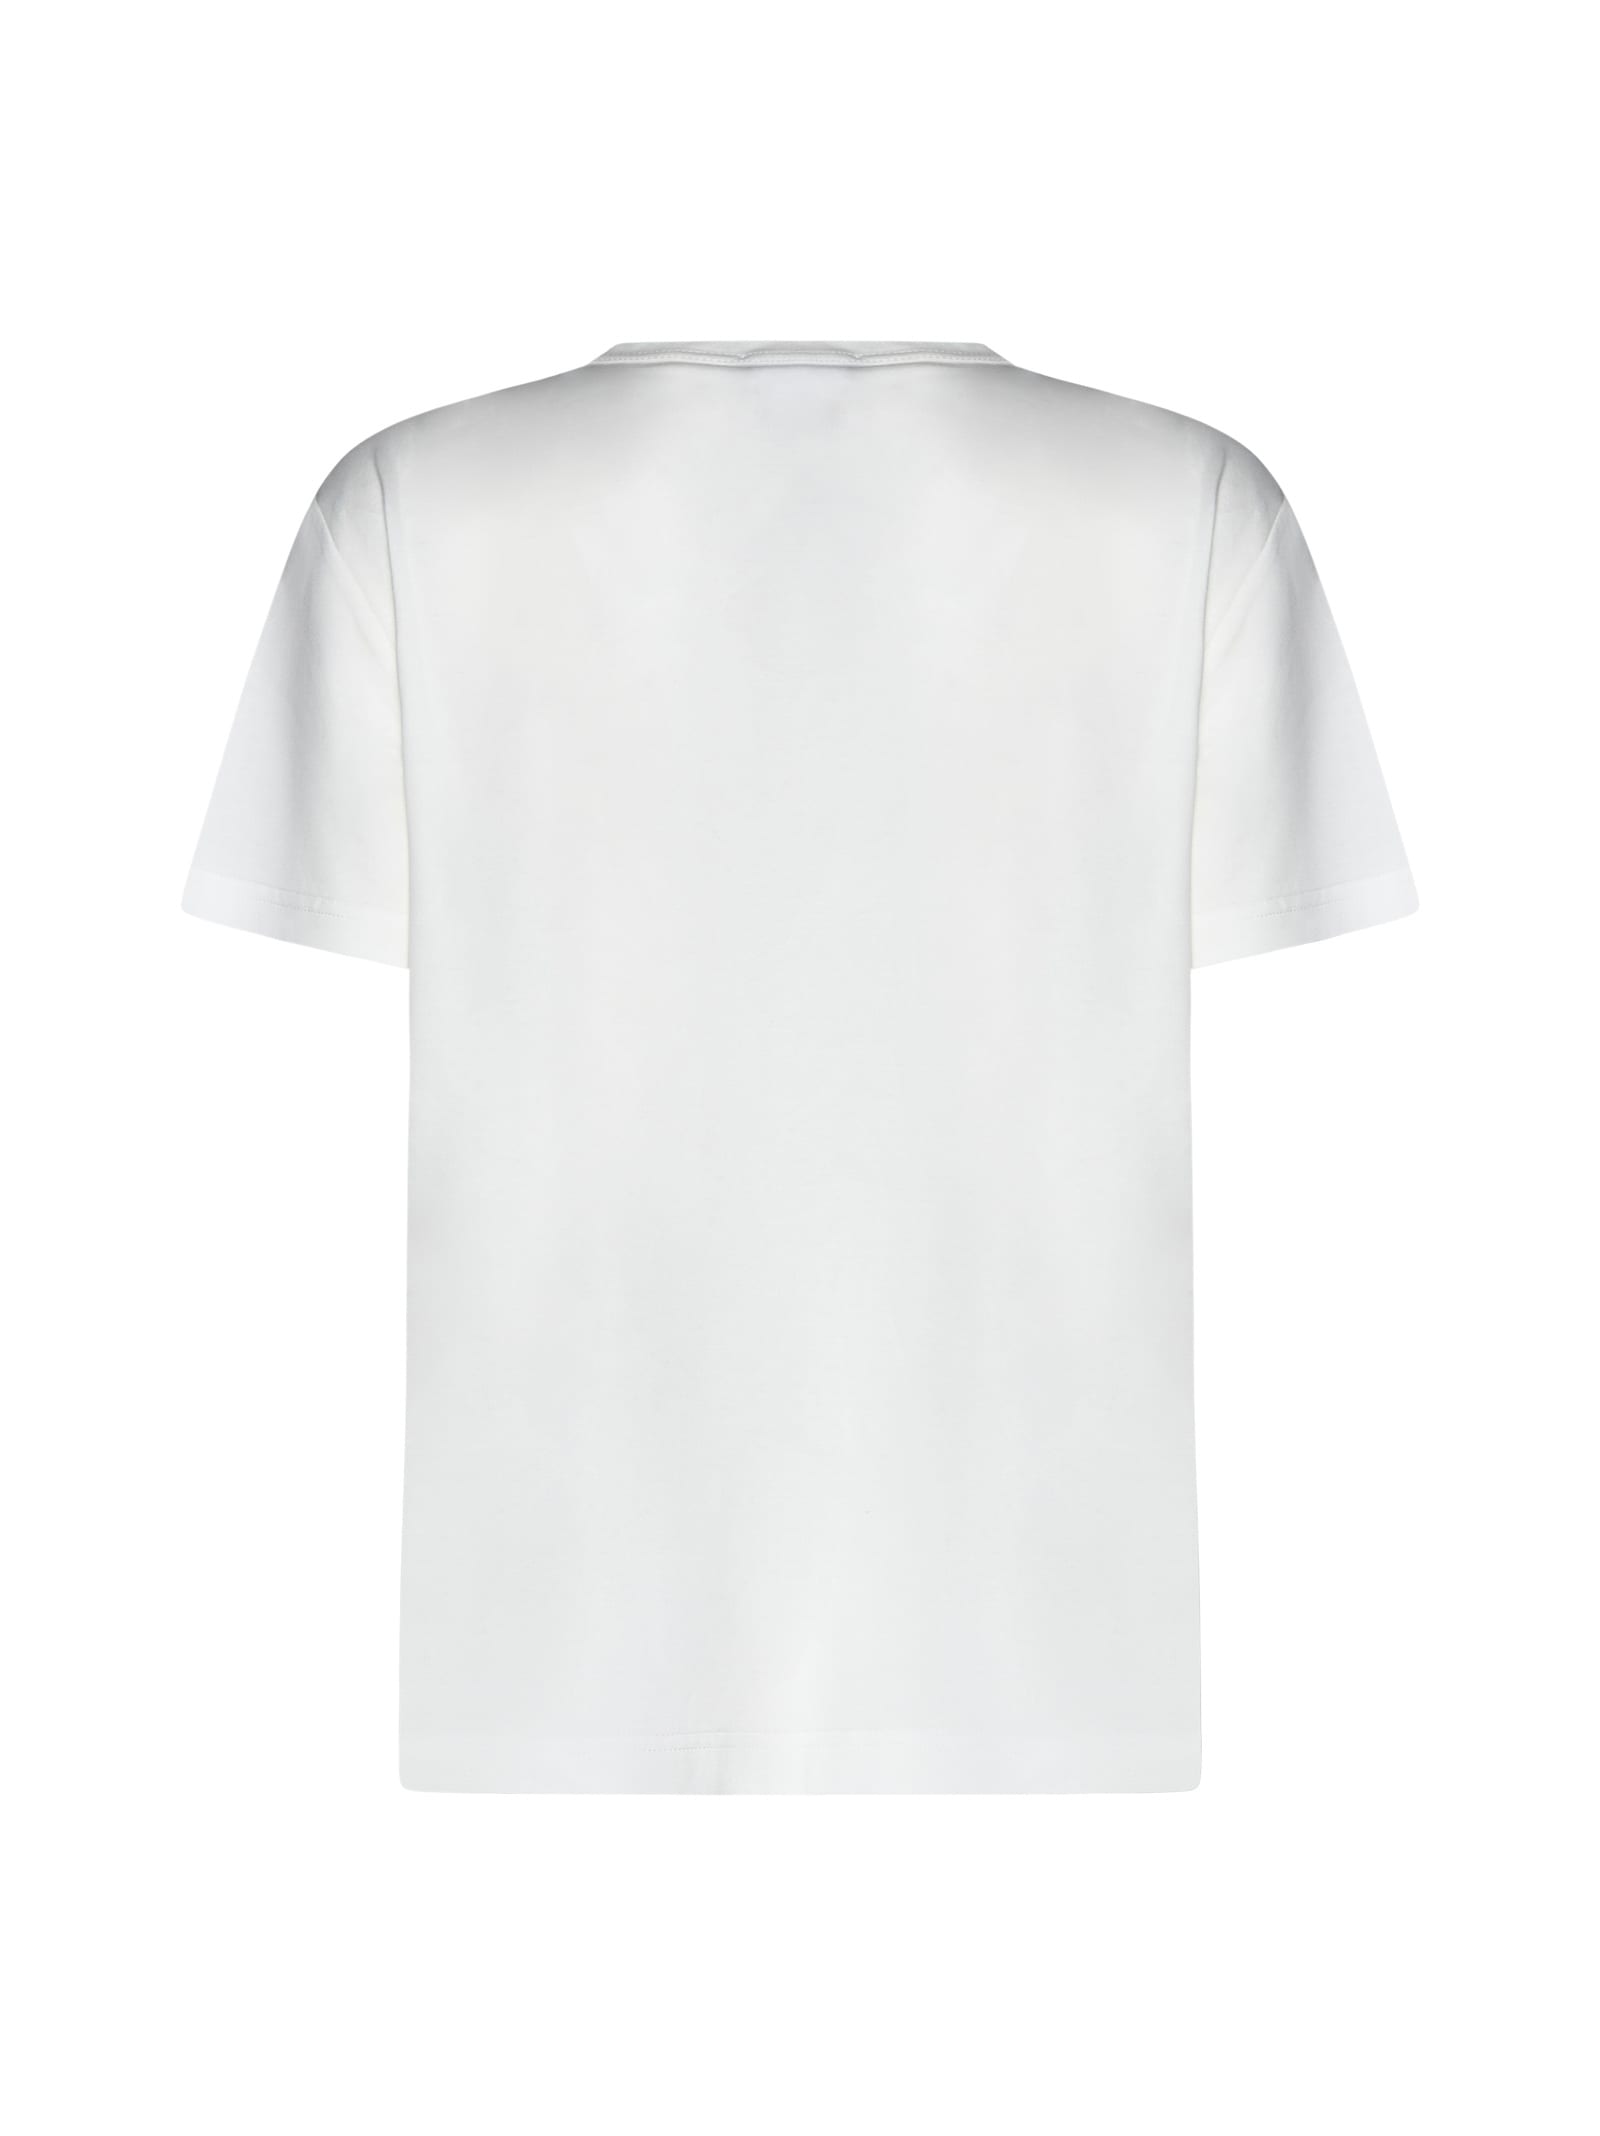 Shop Fabiana Filippi T-shirt In White